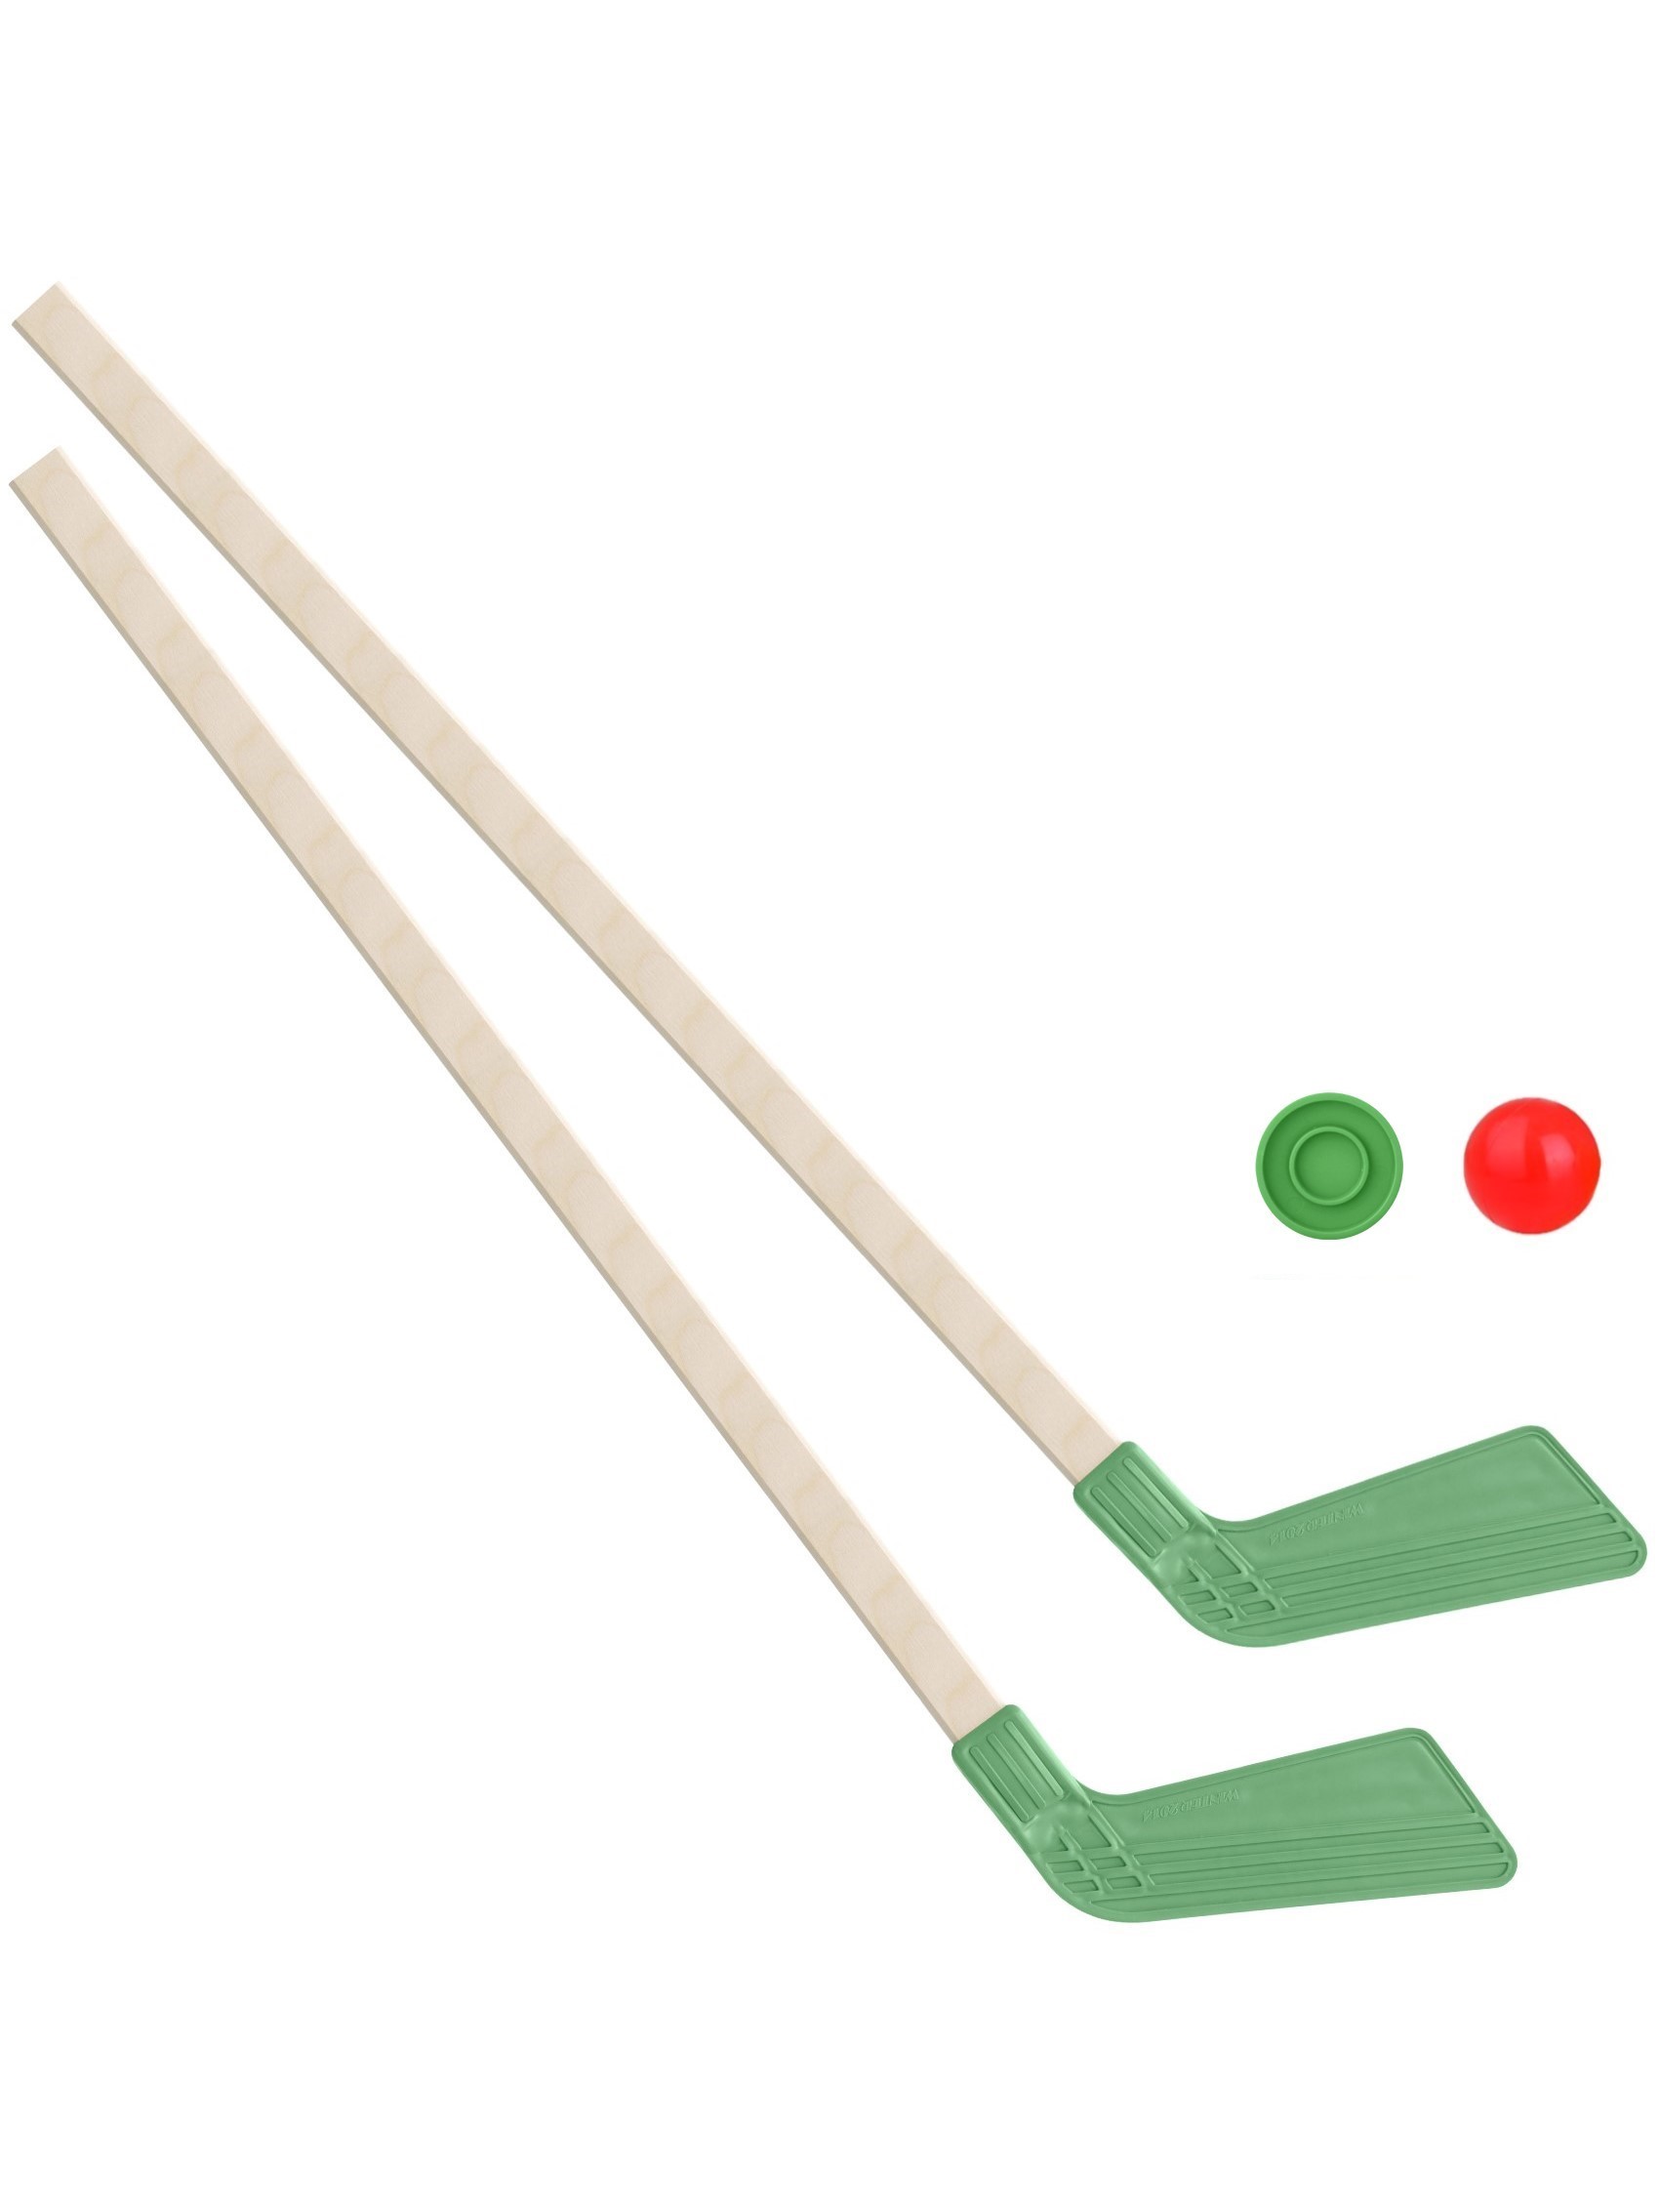 Детский хоккейный набор Задира-плюс Клюшка хоккейная детская 2 шт(зеленые)+шайба+мячик